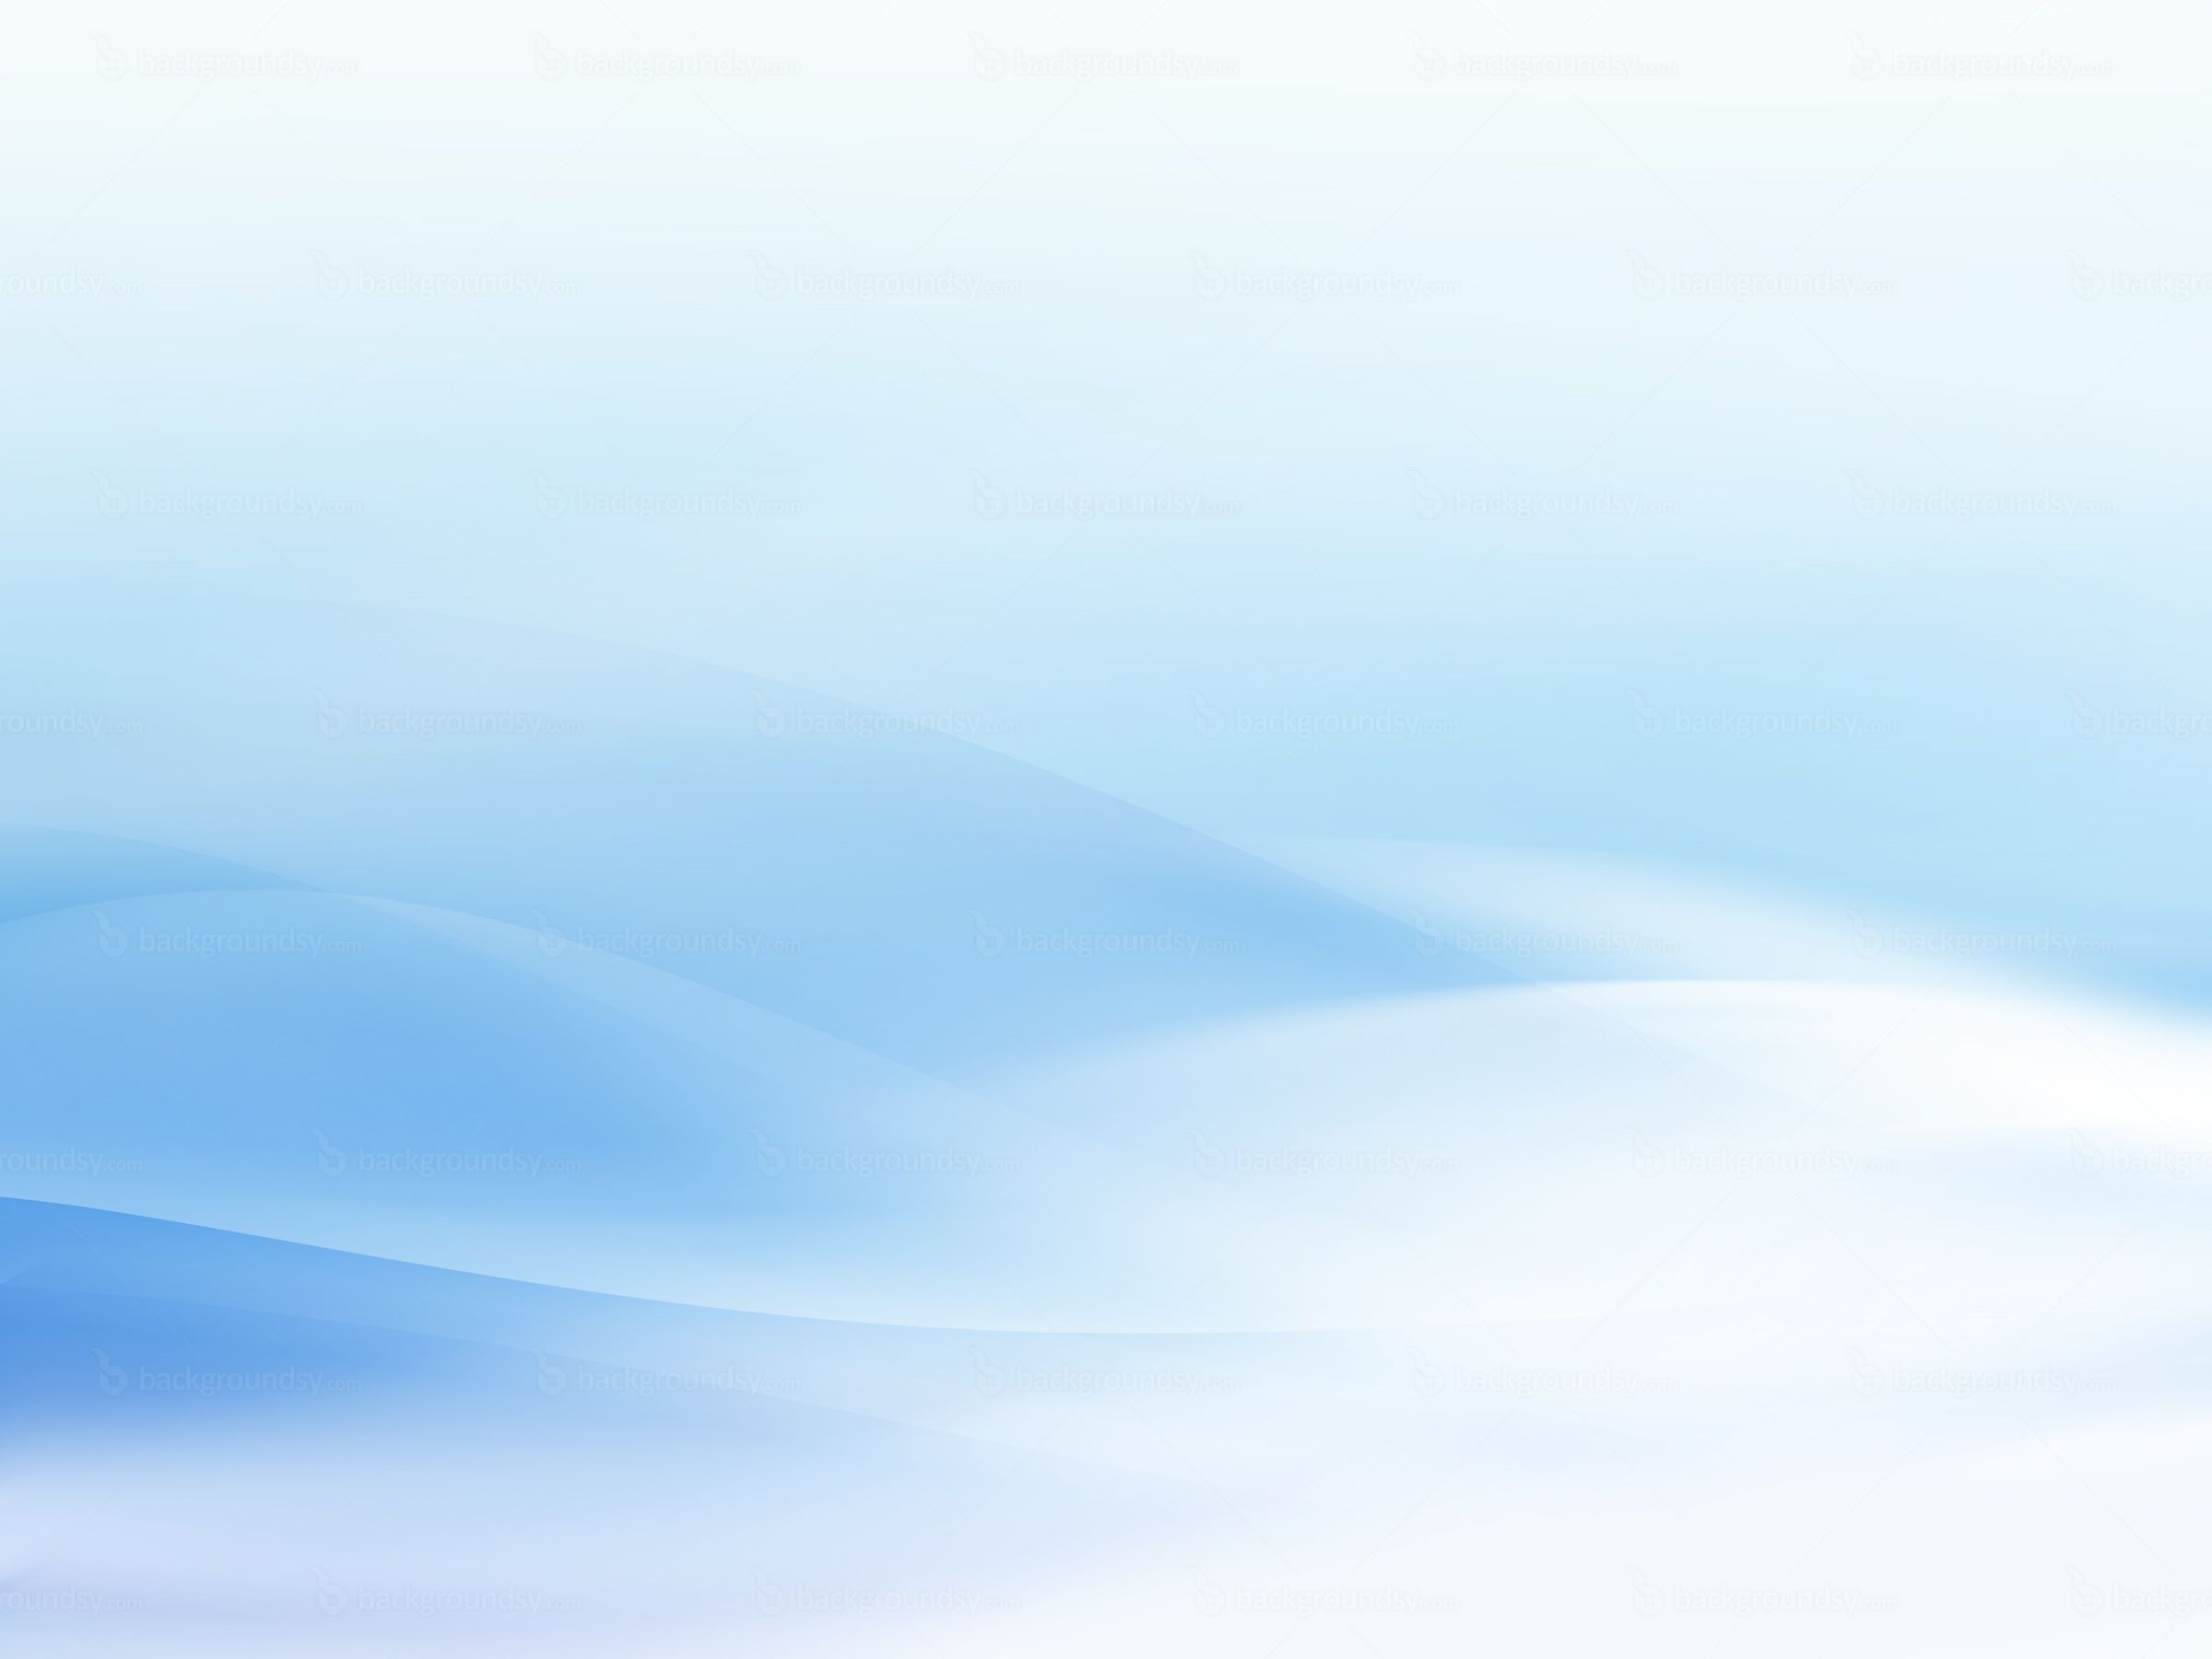 Light blue background. Desktop background picture, Blue background wallpaper, Blue background image